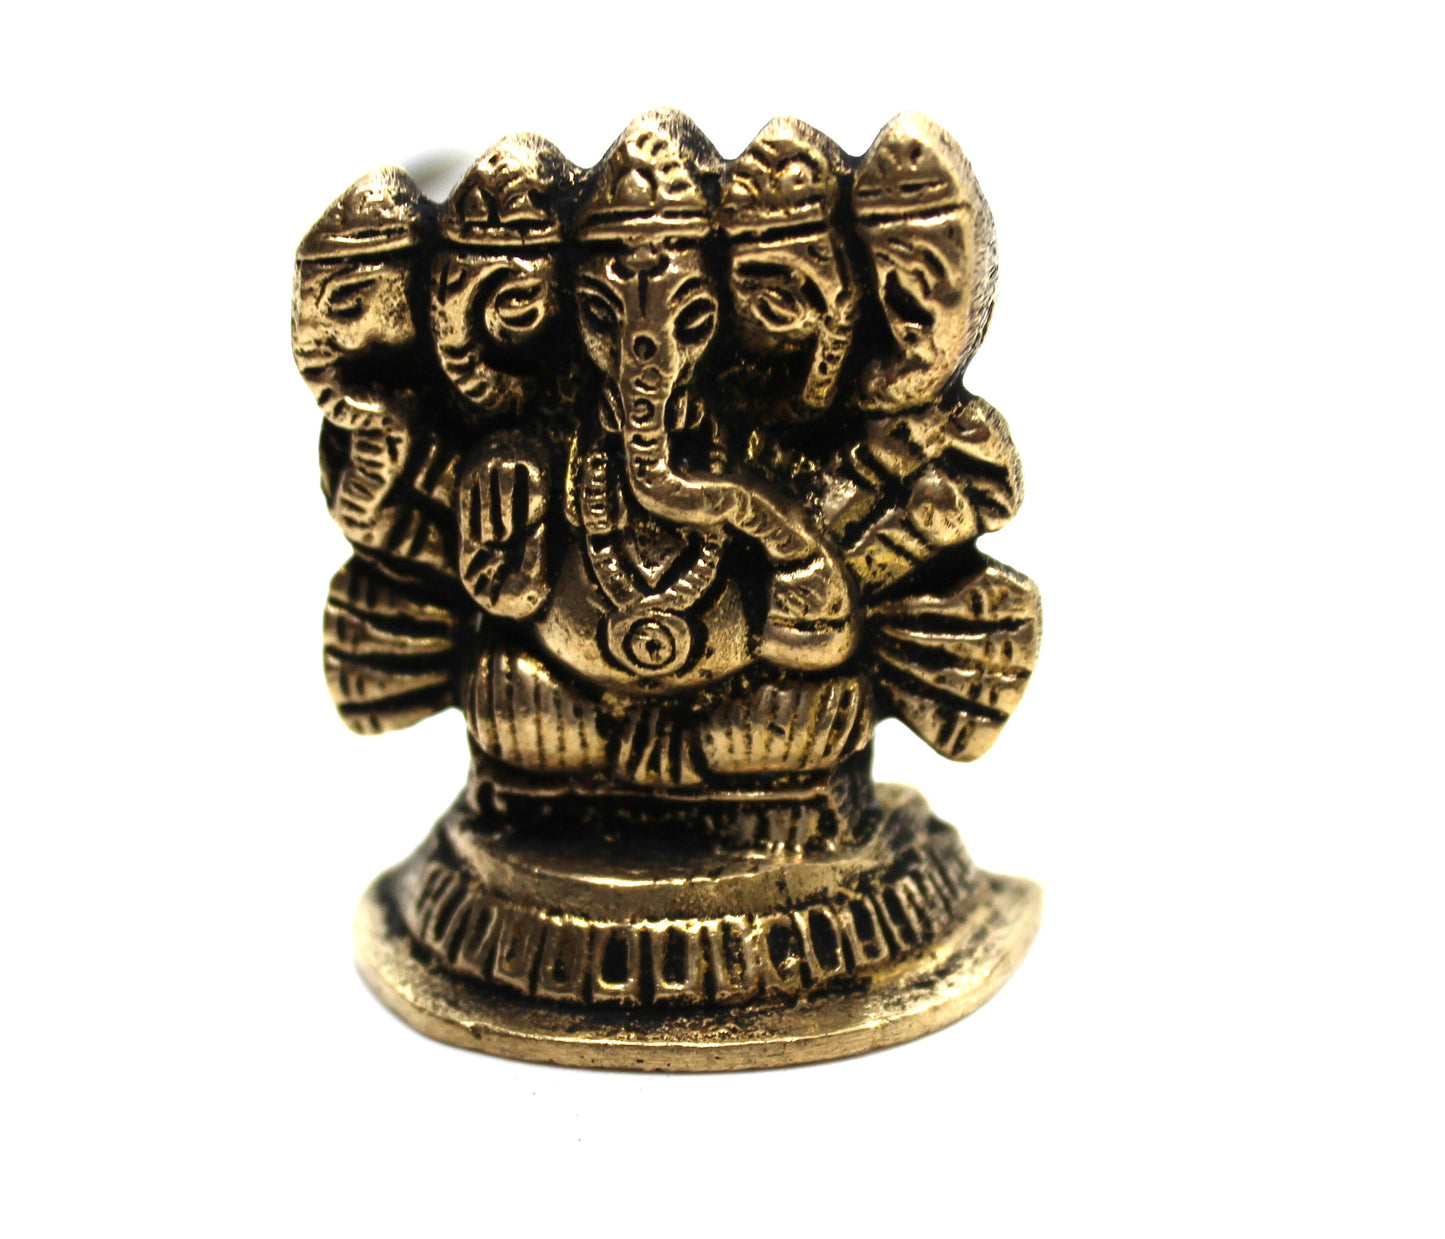 Small Ganesha Statue in Brass, 4 CM Brass Ganesh Idol Small, Ganapati Murti, Vinayaka for Hindu God of good luck, success & new beginnings